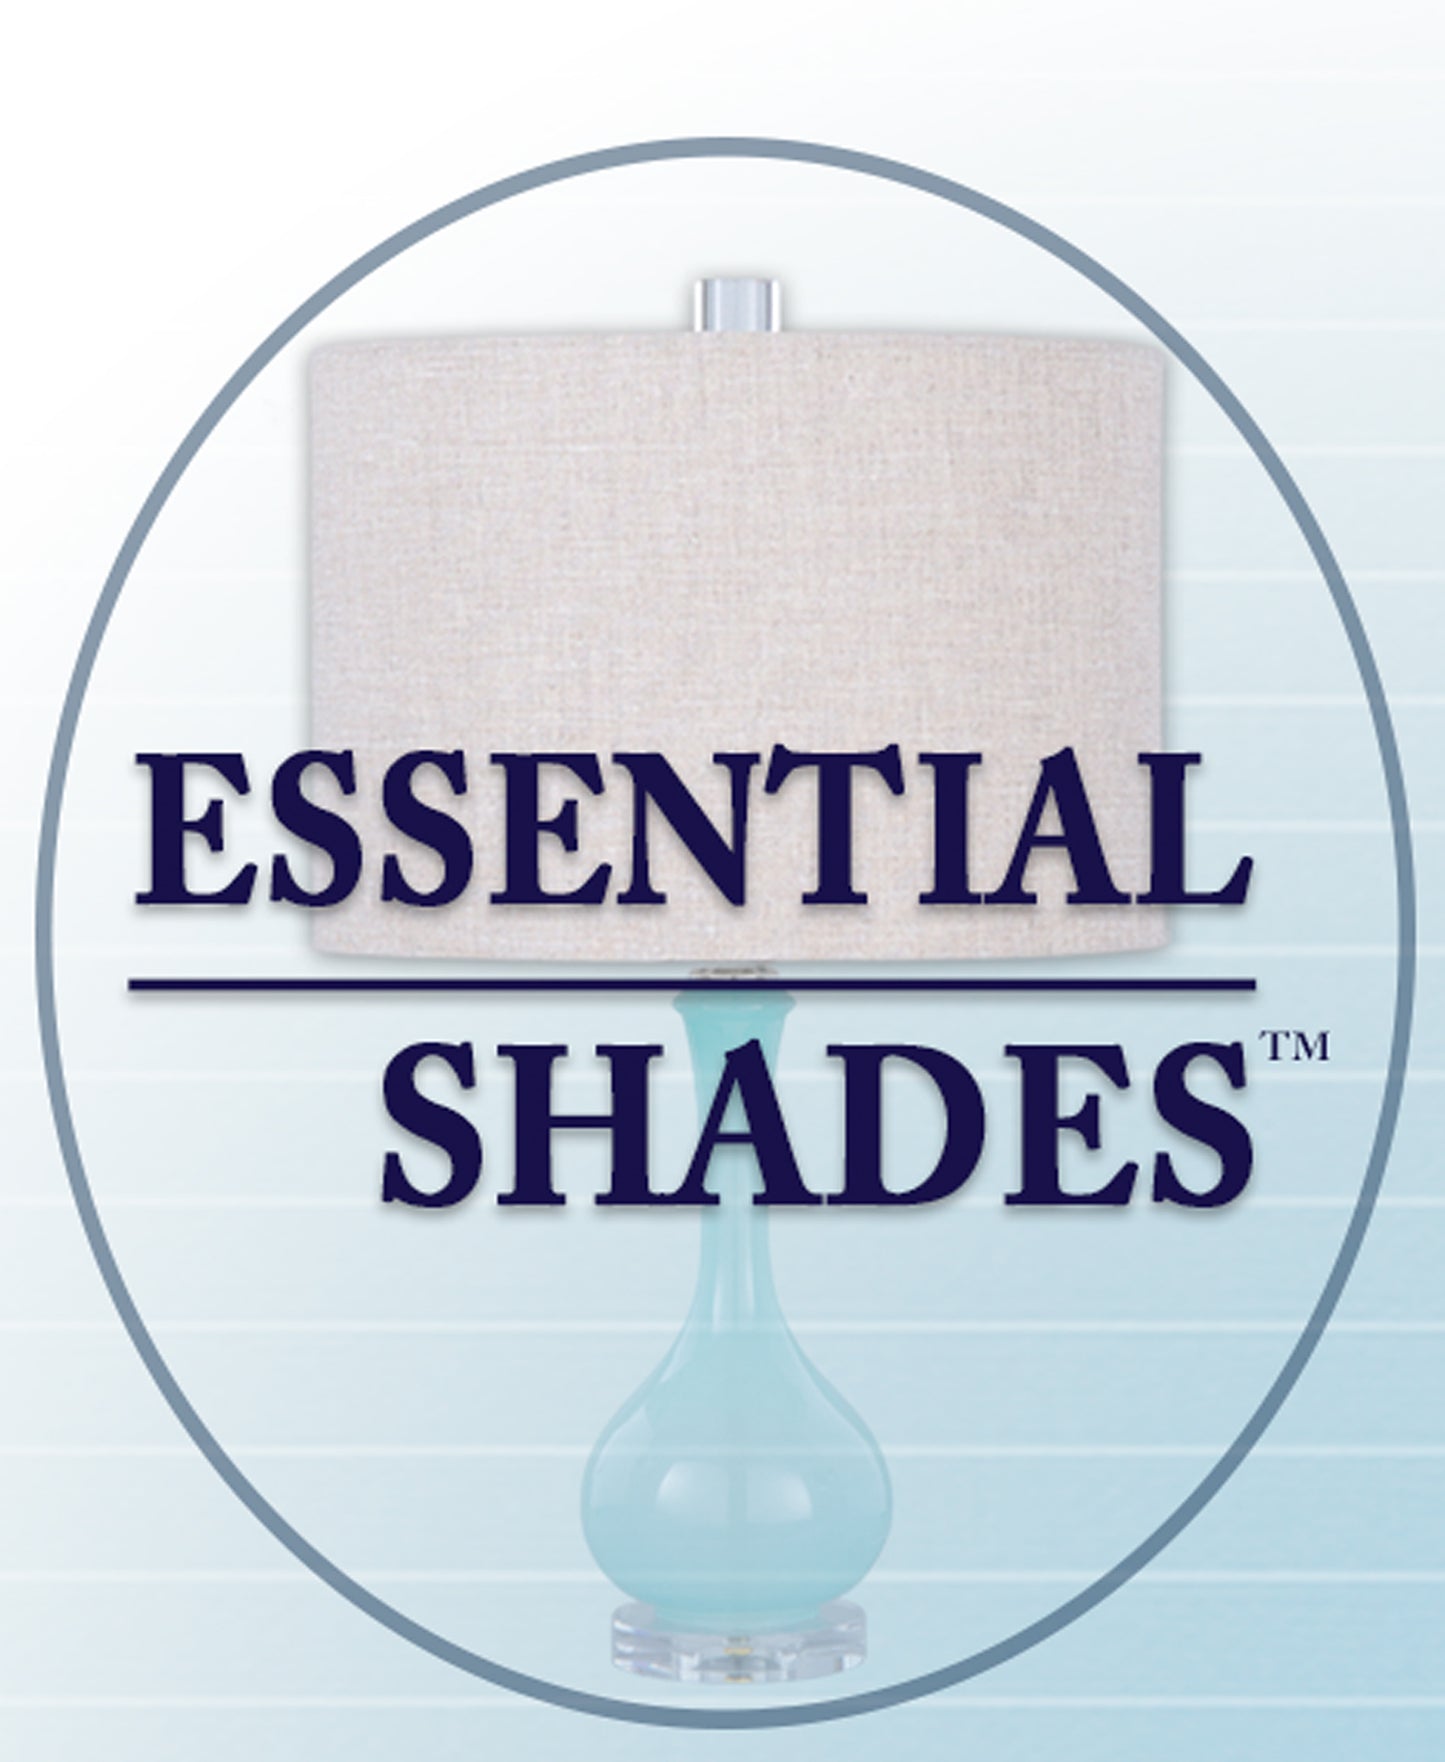 Essential Shades Brand Off White Color Deep Drum No-Hug, Value Lamp Shades (06897E)